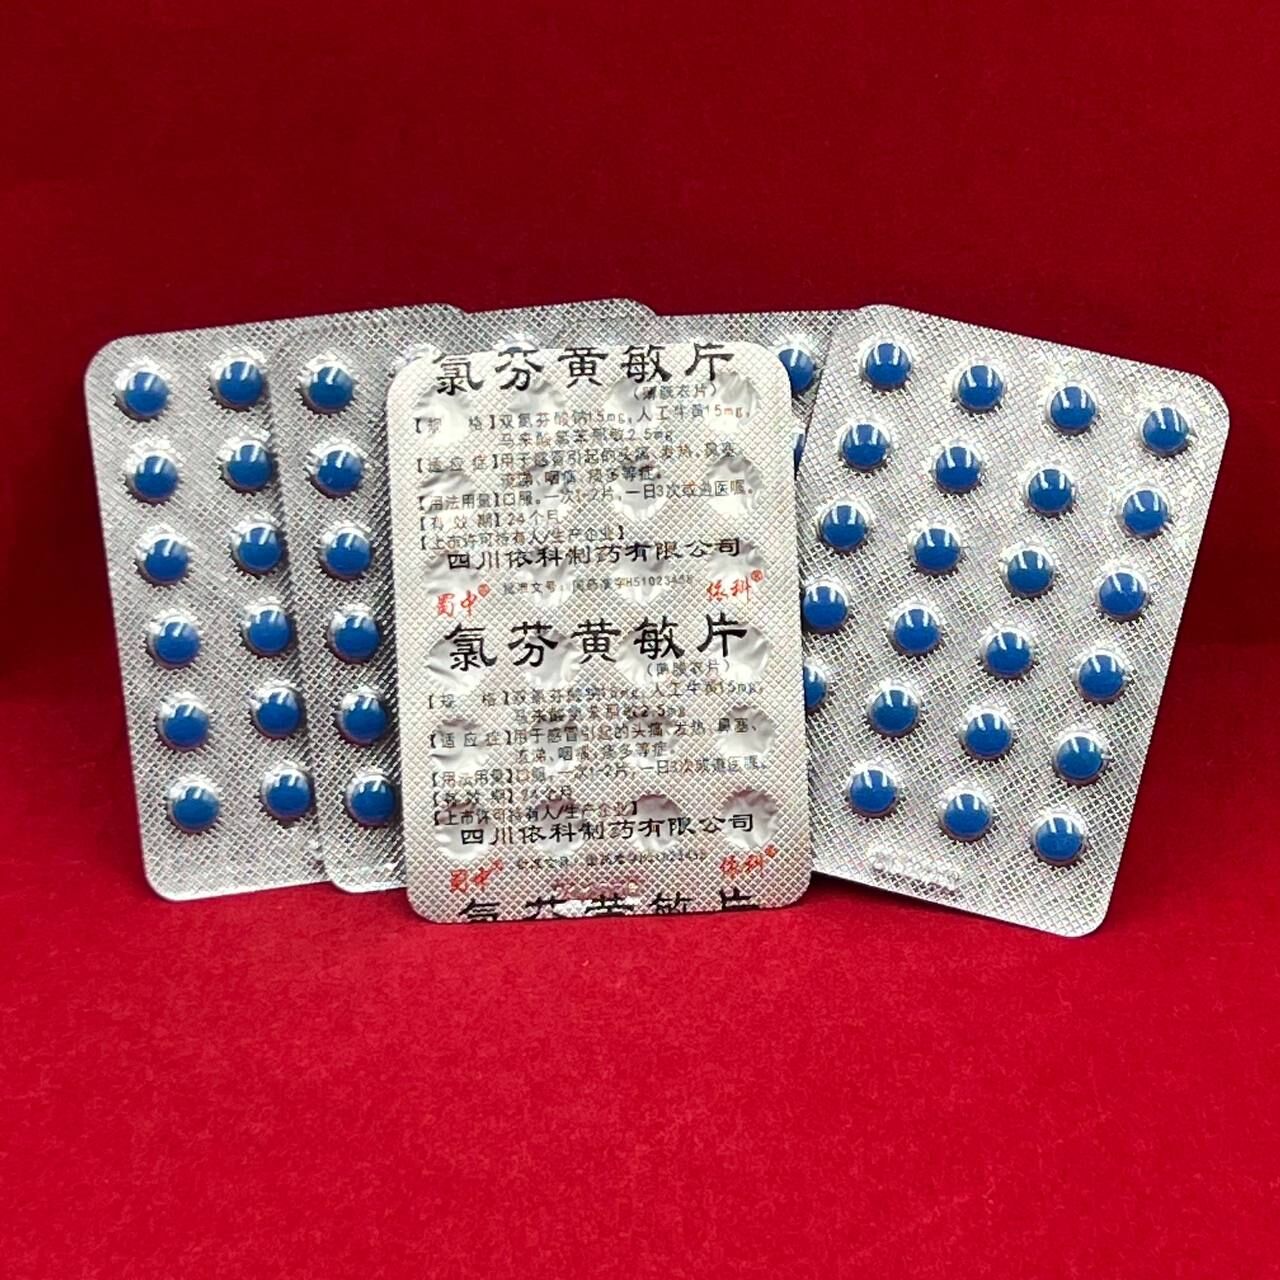 БАД средство от простуды и вирусов синие таблетки 1 коробка (25 блистеров) срок годности до 09.2024г.